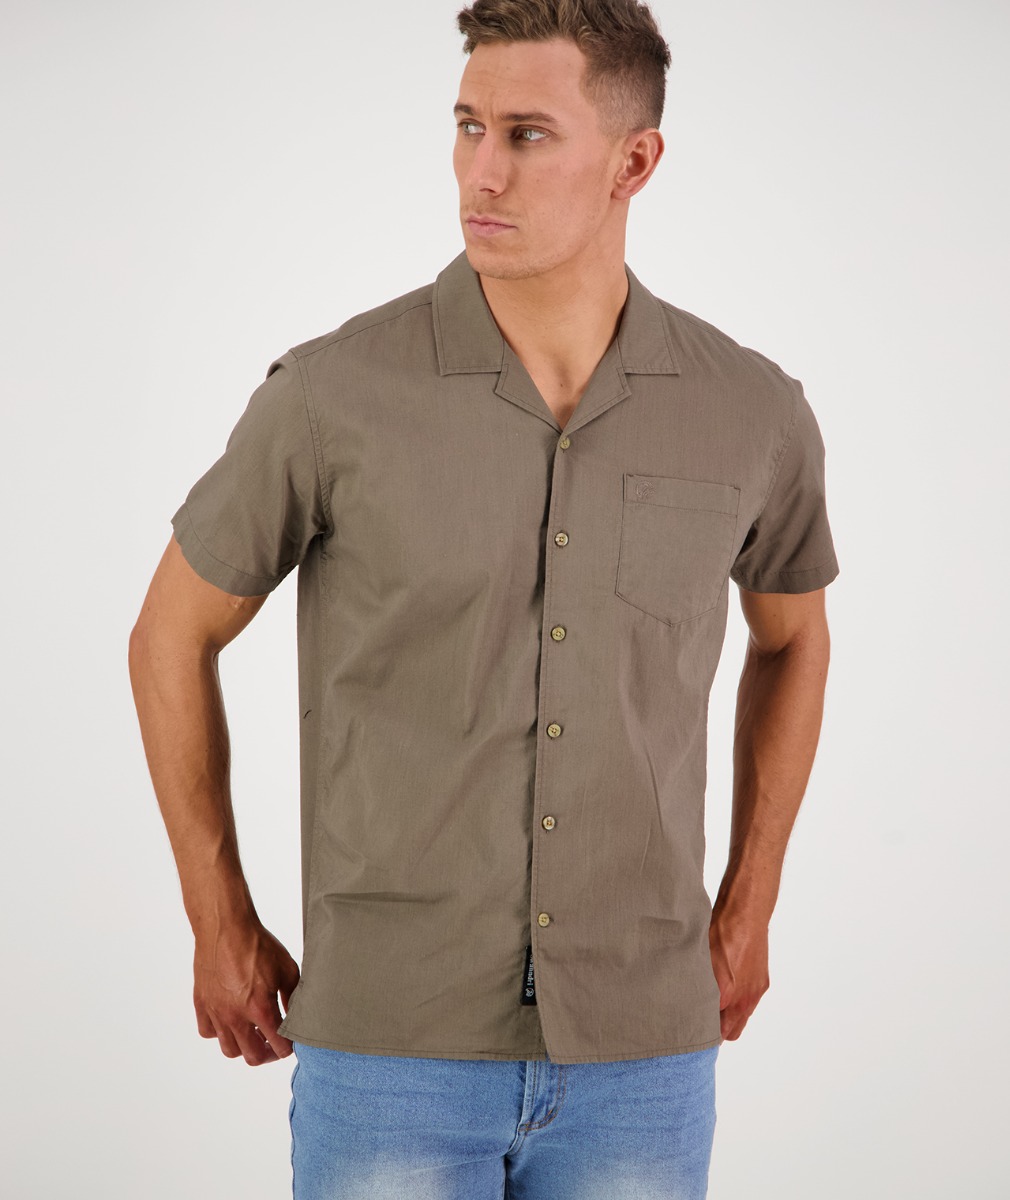 Men's Jacks Peak Short Sleeve Shirt